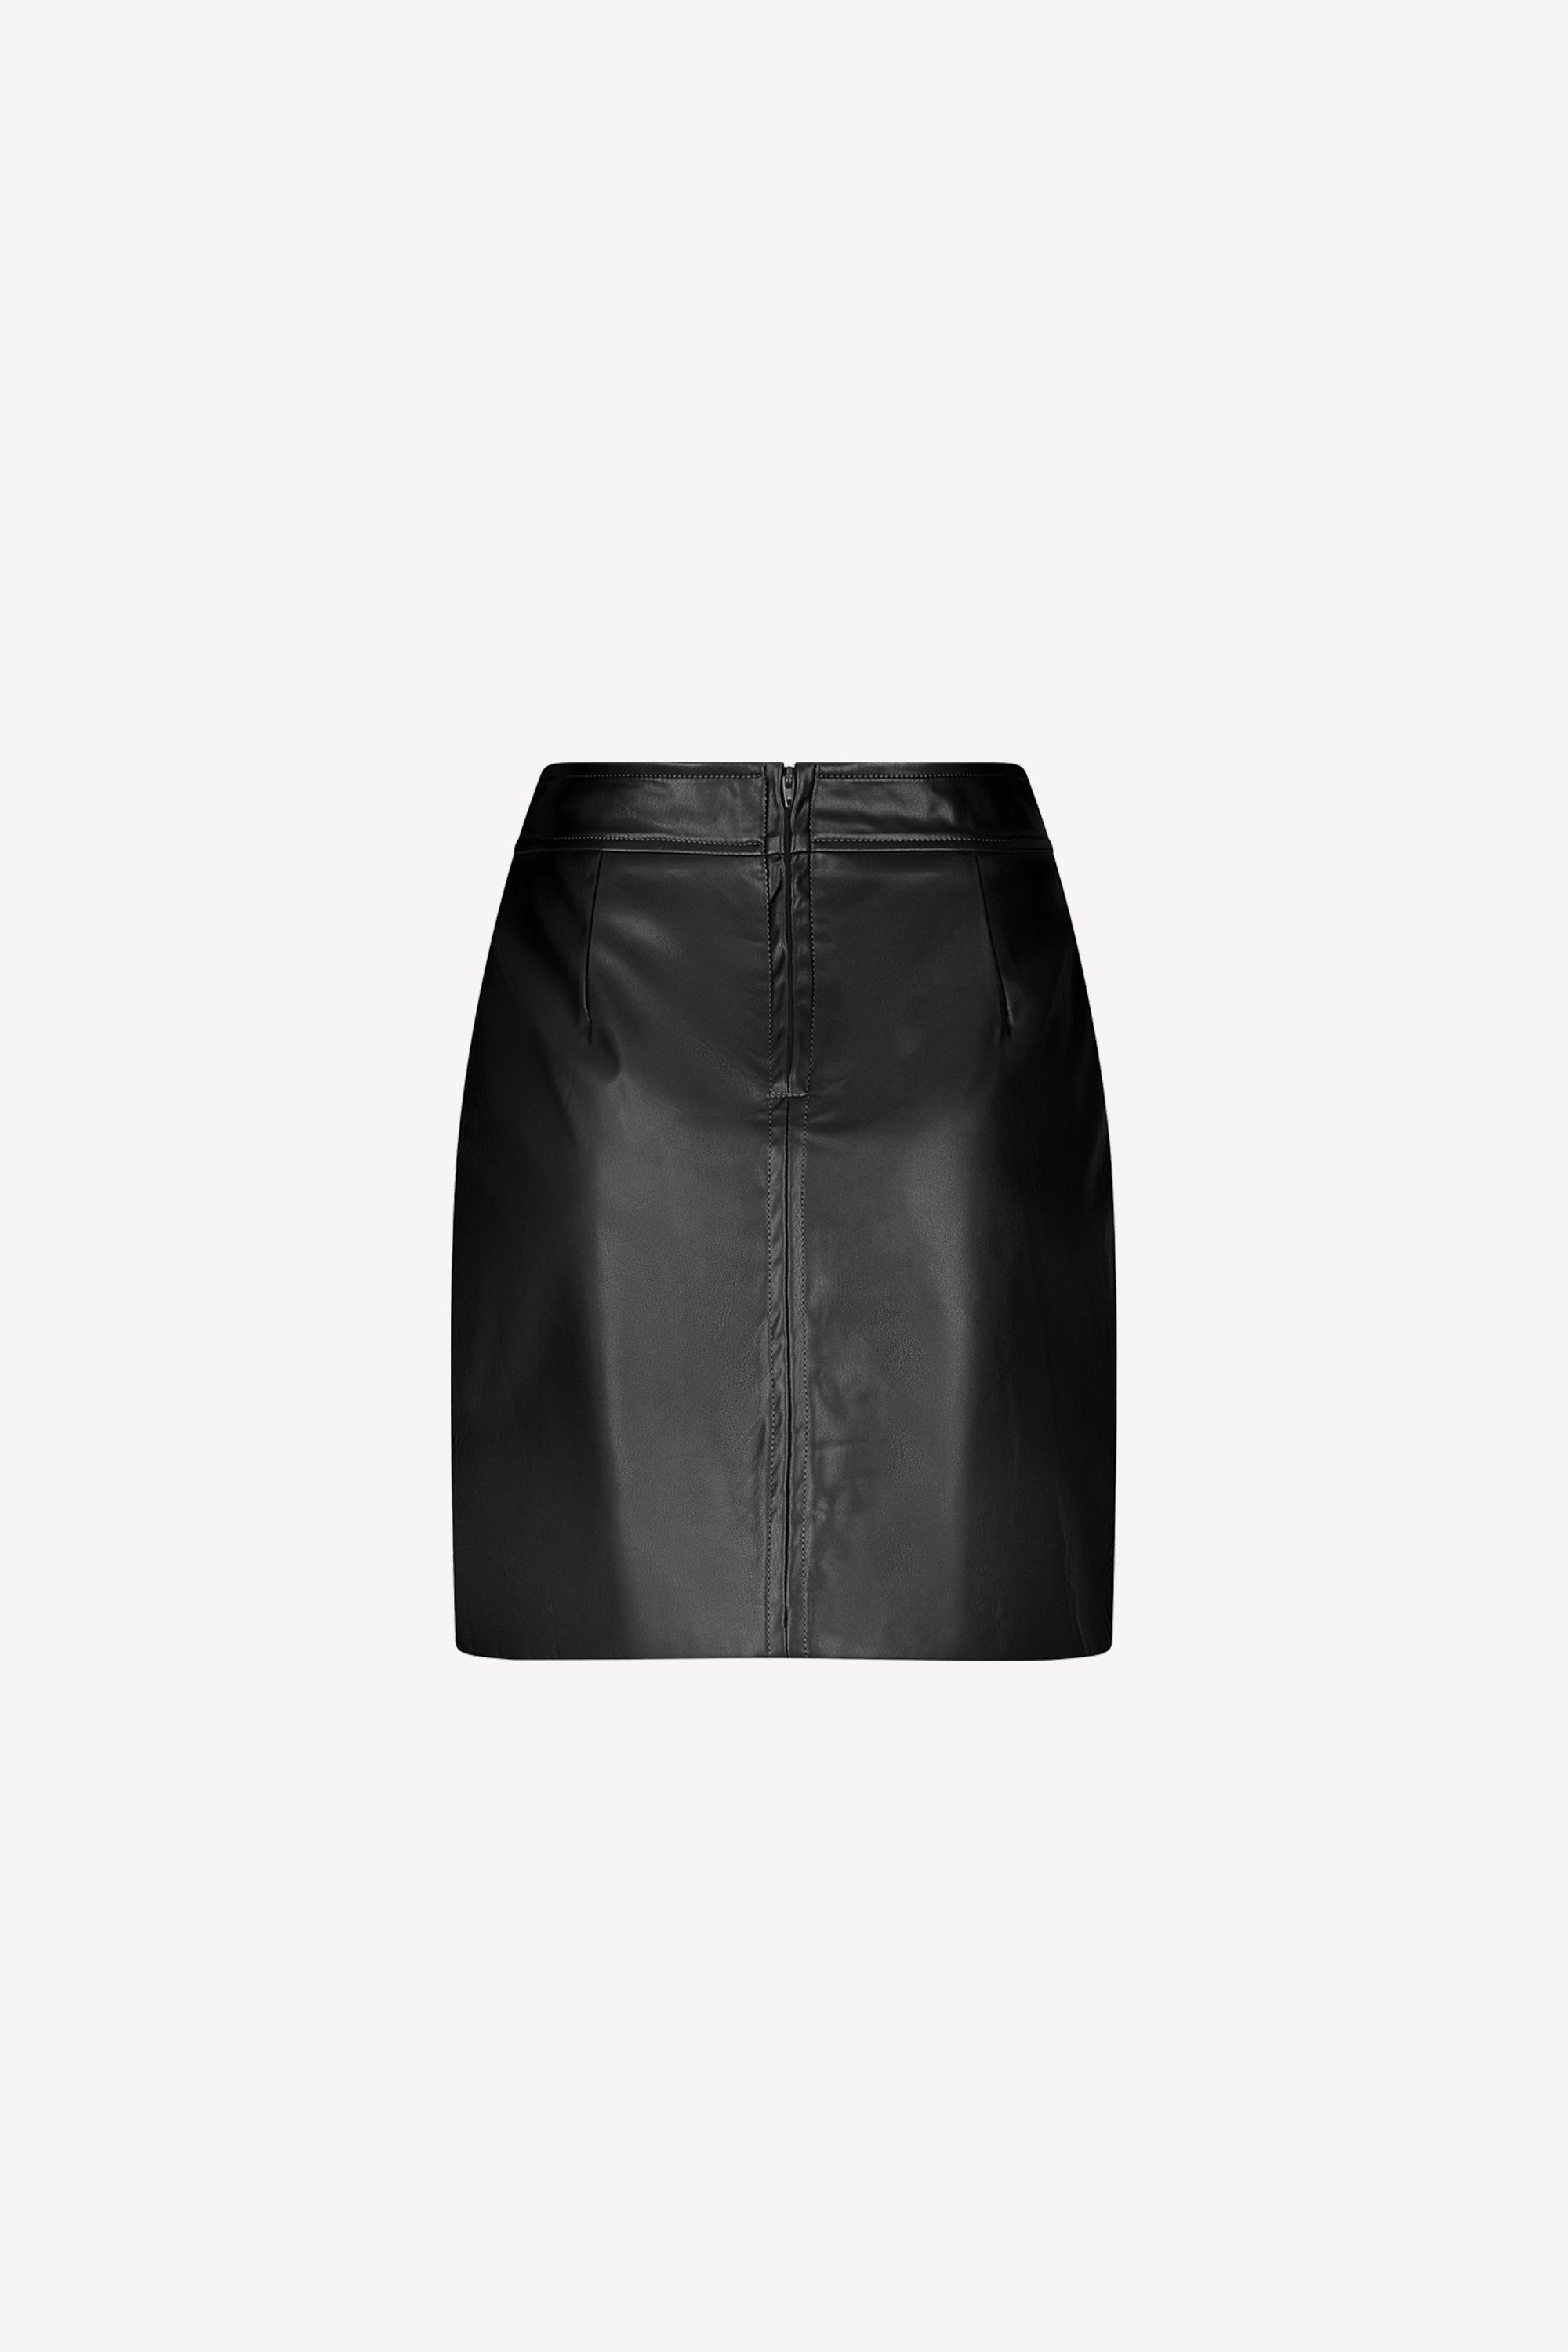 Chelsea Skirt Black